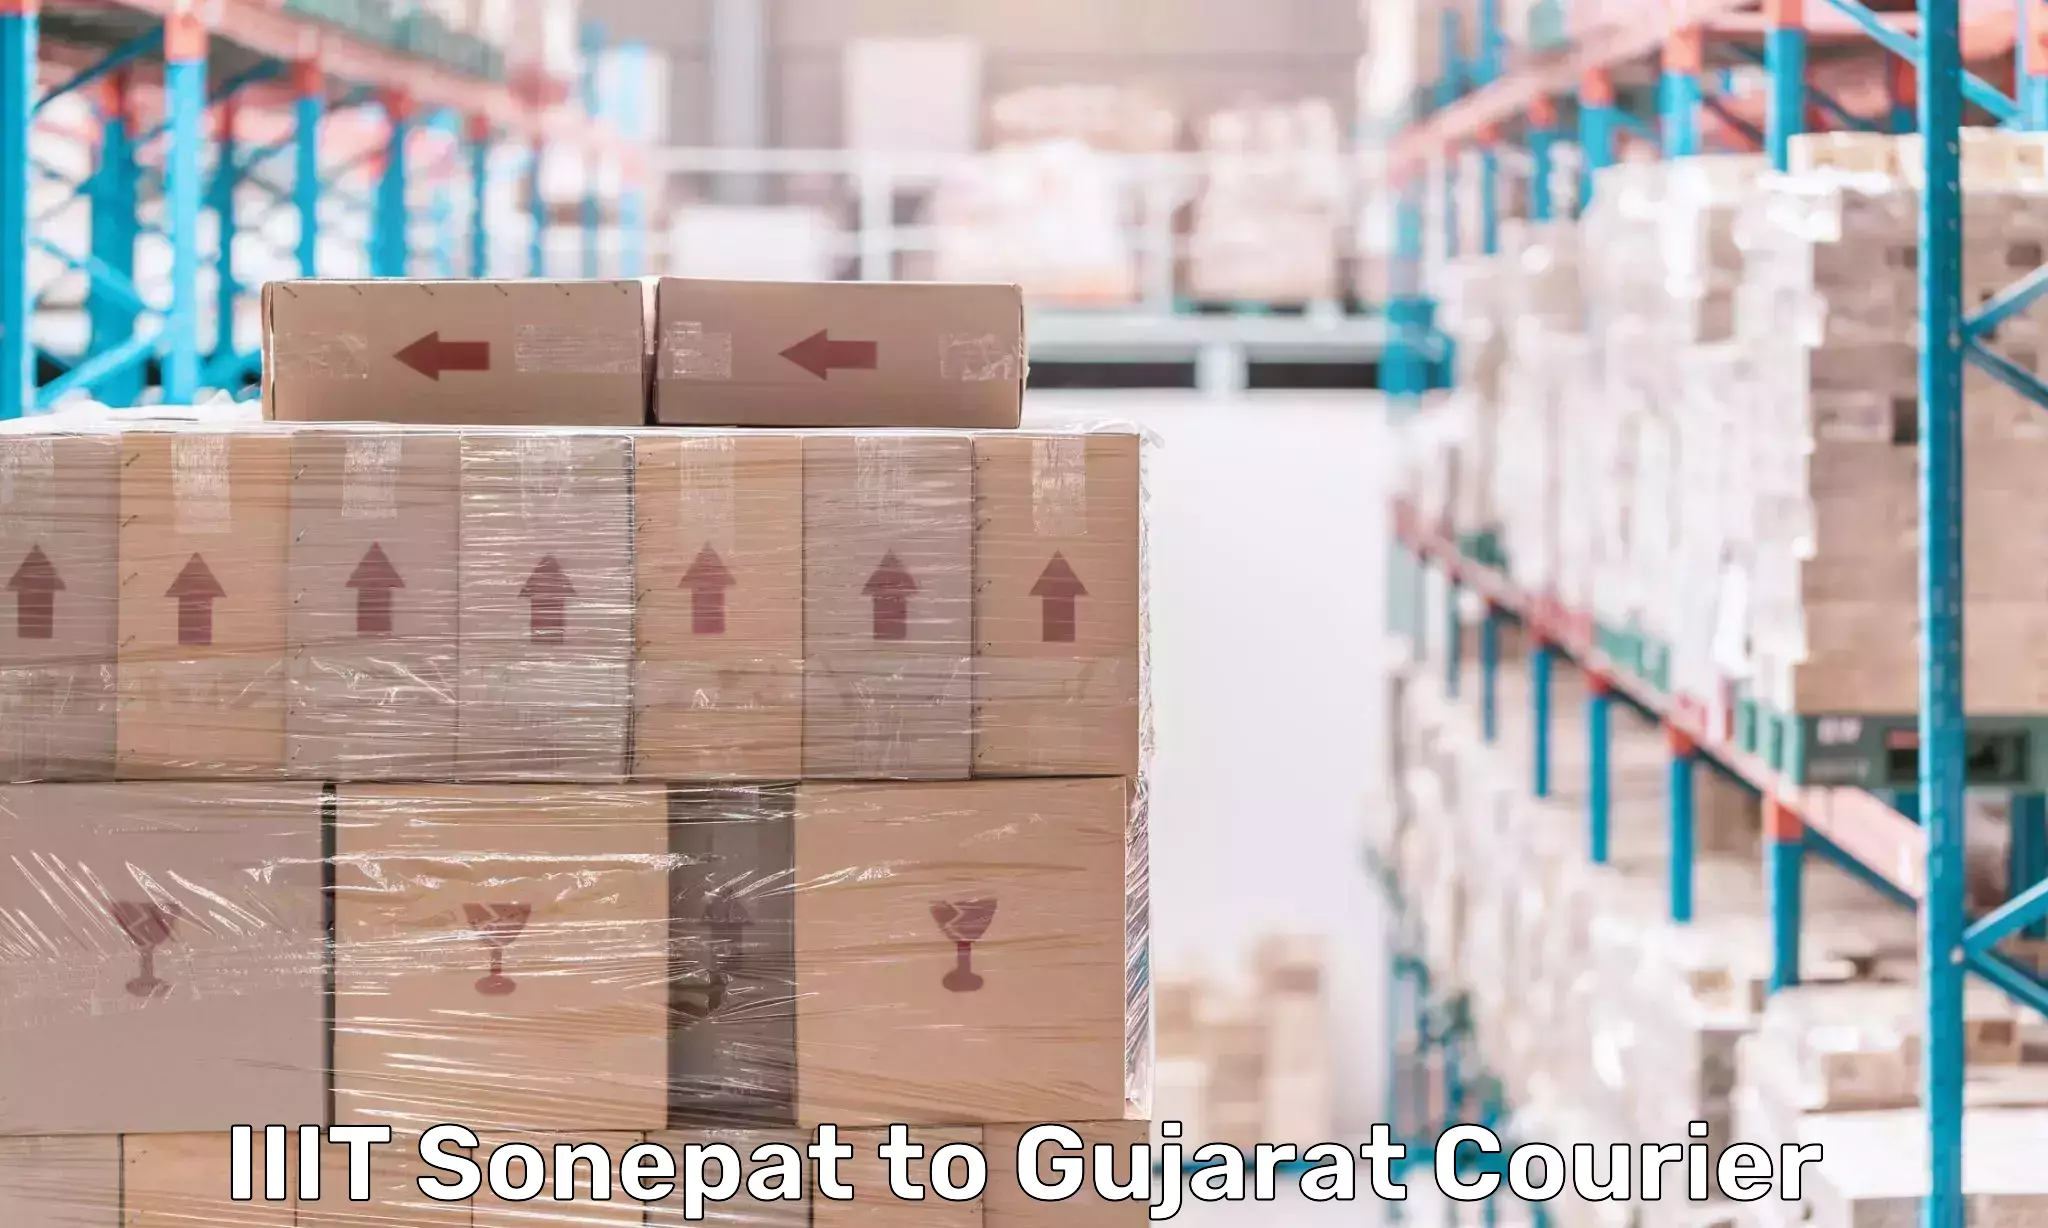 Premium delivery services IIIT Sonepat to Gujarat